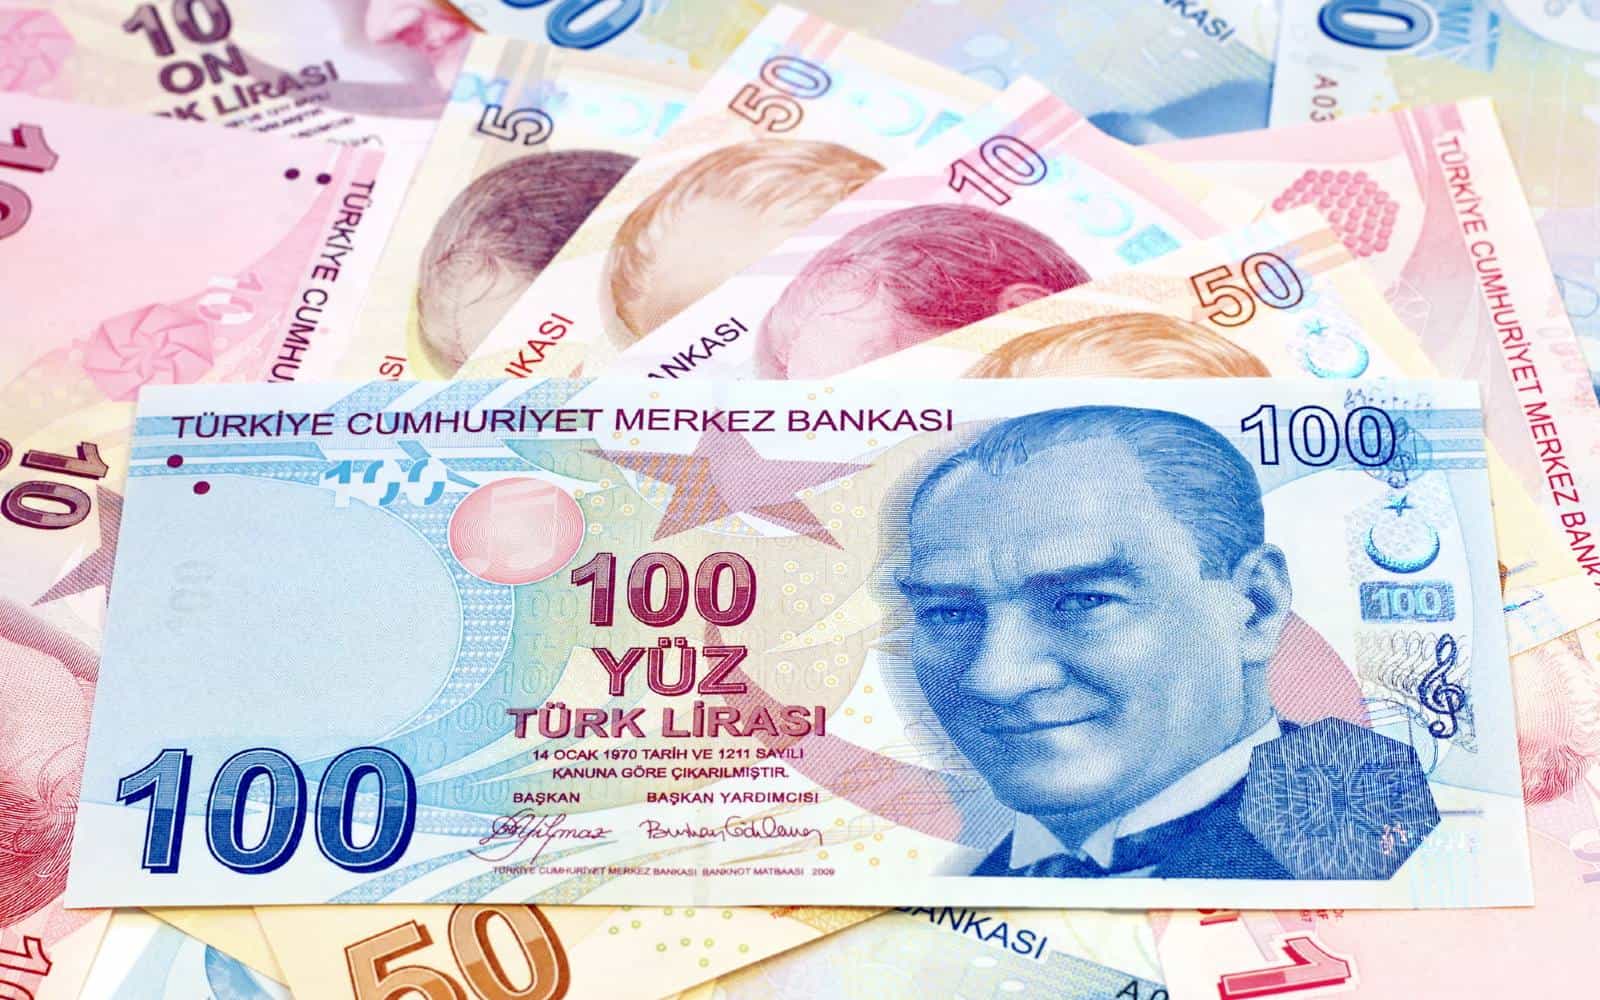 Inviare denaro Turchia